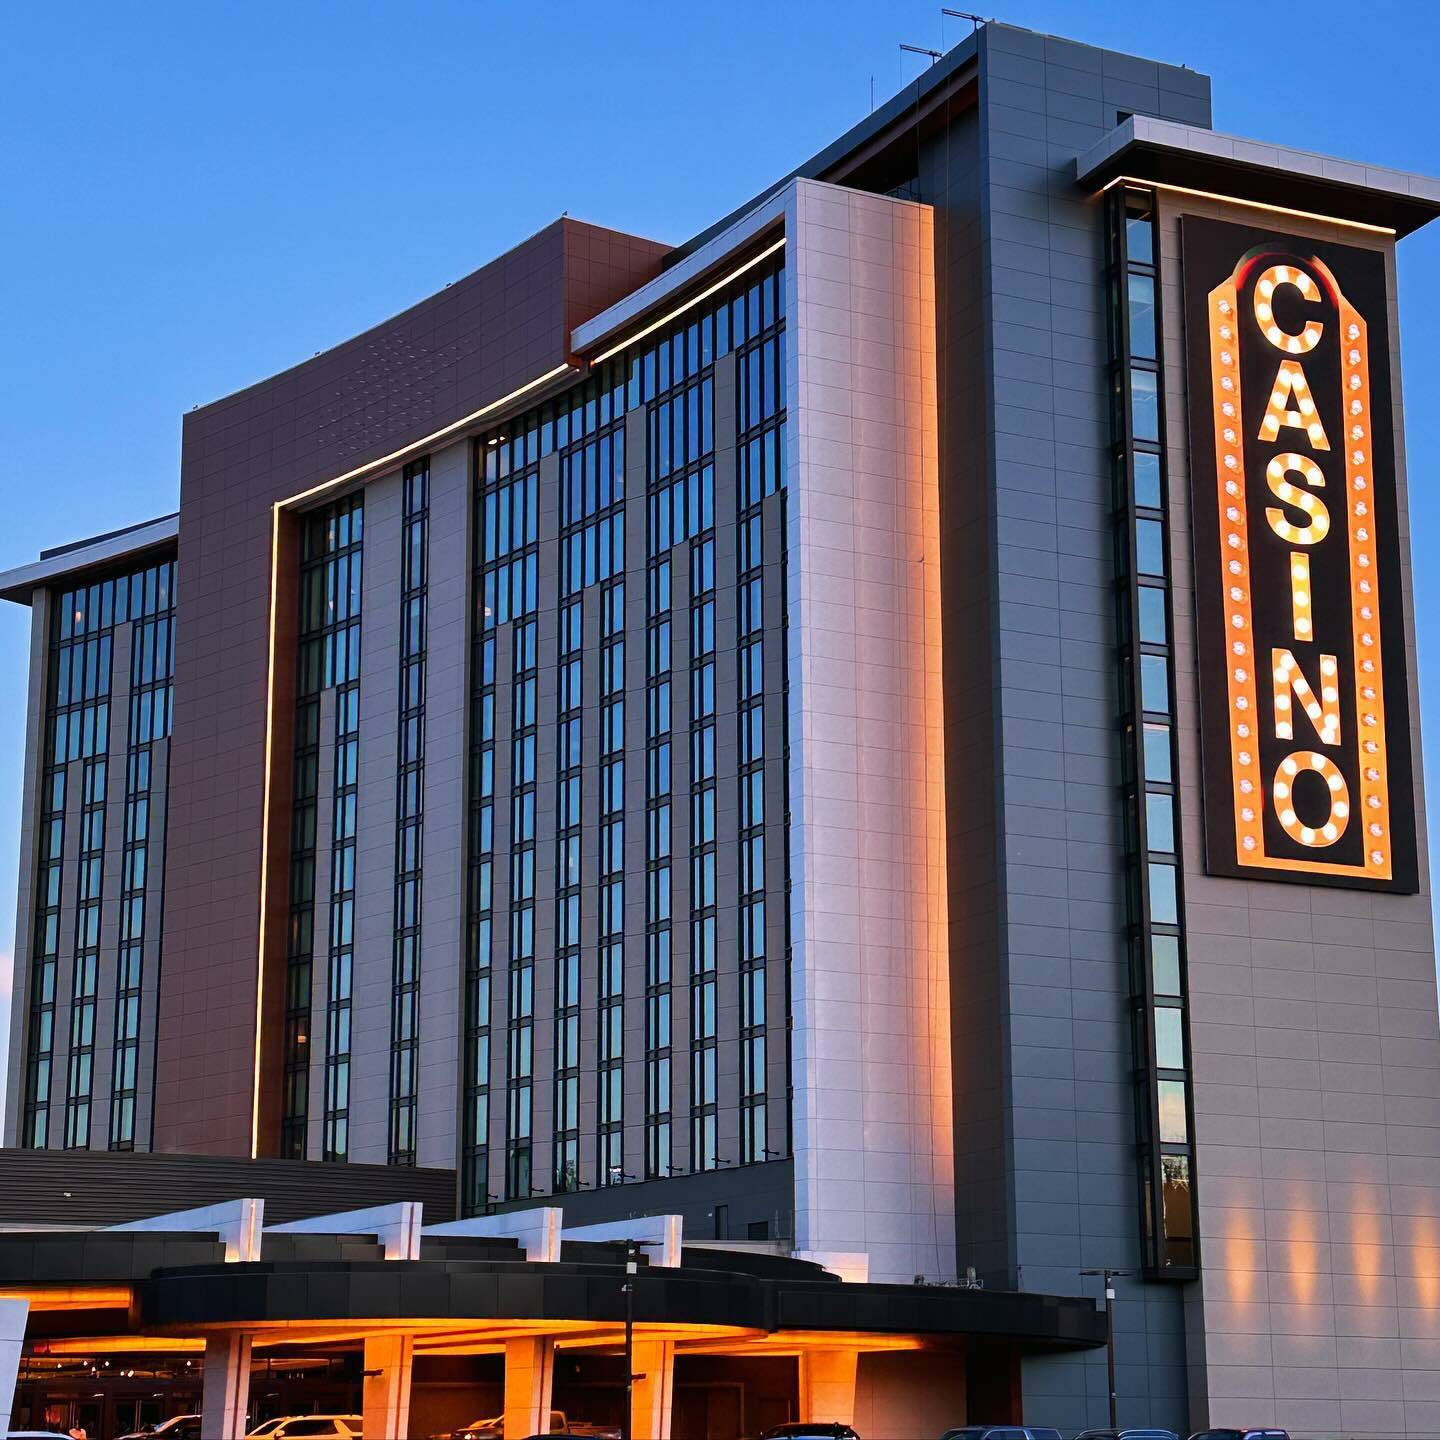 The Muckleshoot Casino Resort is at 2402 Auburn Way S. Courtesy Photo, Muckleshoot Casino Resort